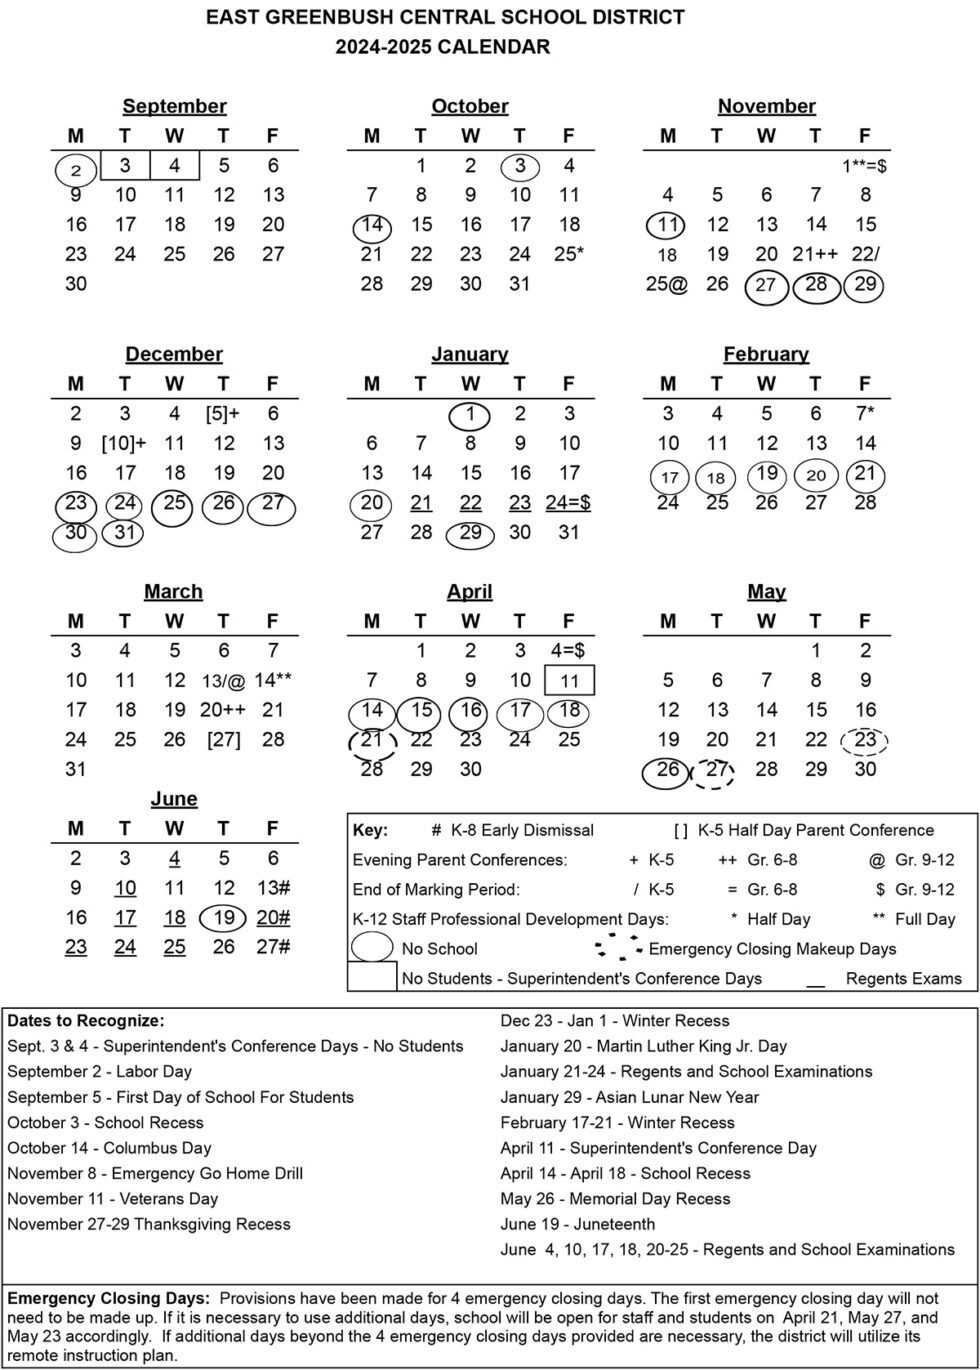 2024-25 School Calendar Now Available | East Greenbush CSD